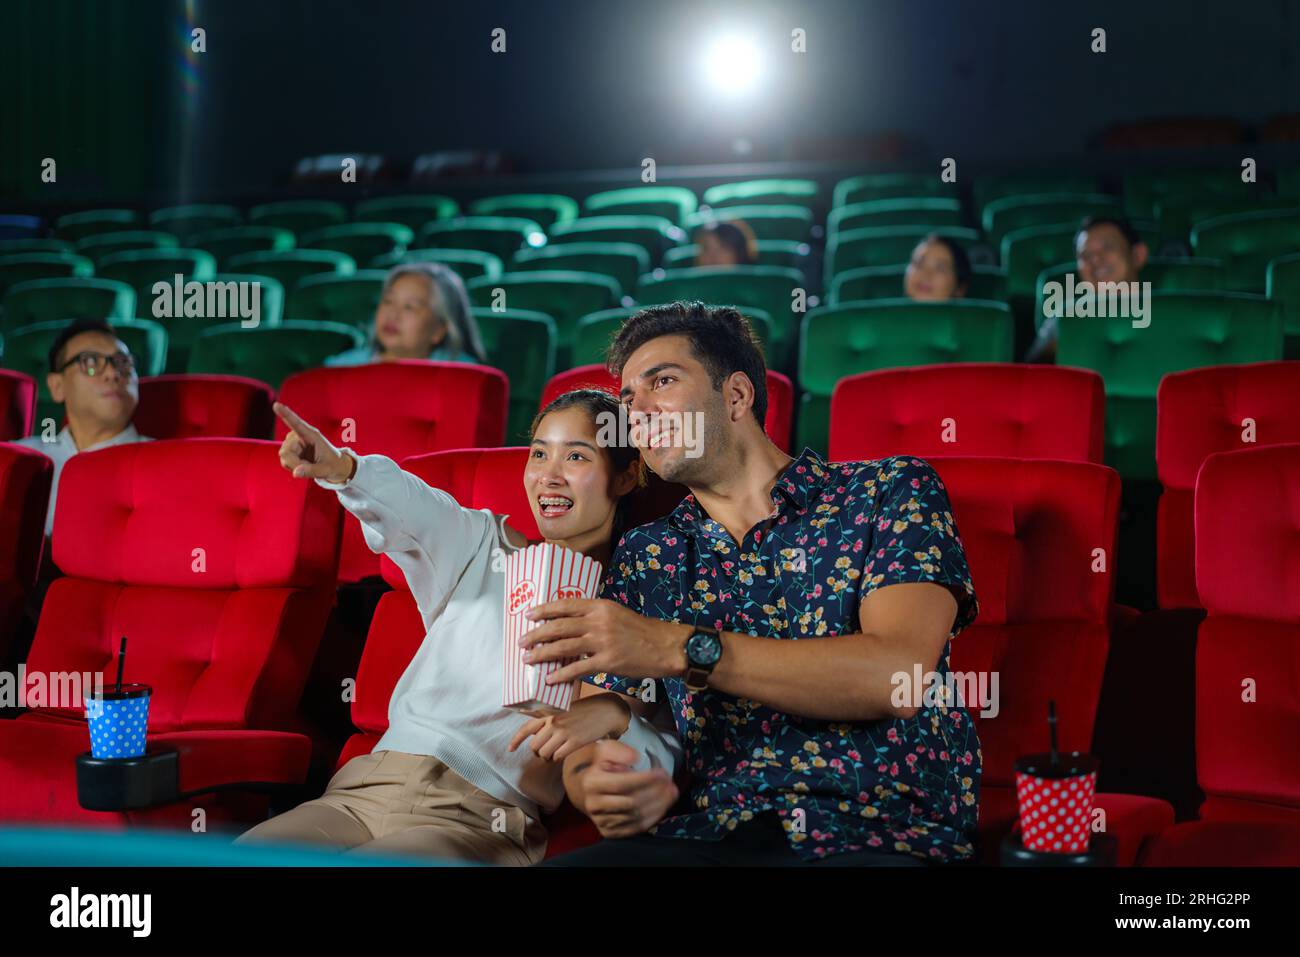 Paare genießen Filme, während sie Popcorn halten, und schaffen so ein gemütliches und unterhaltsames Kinoabend. Stockfoto